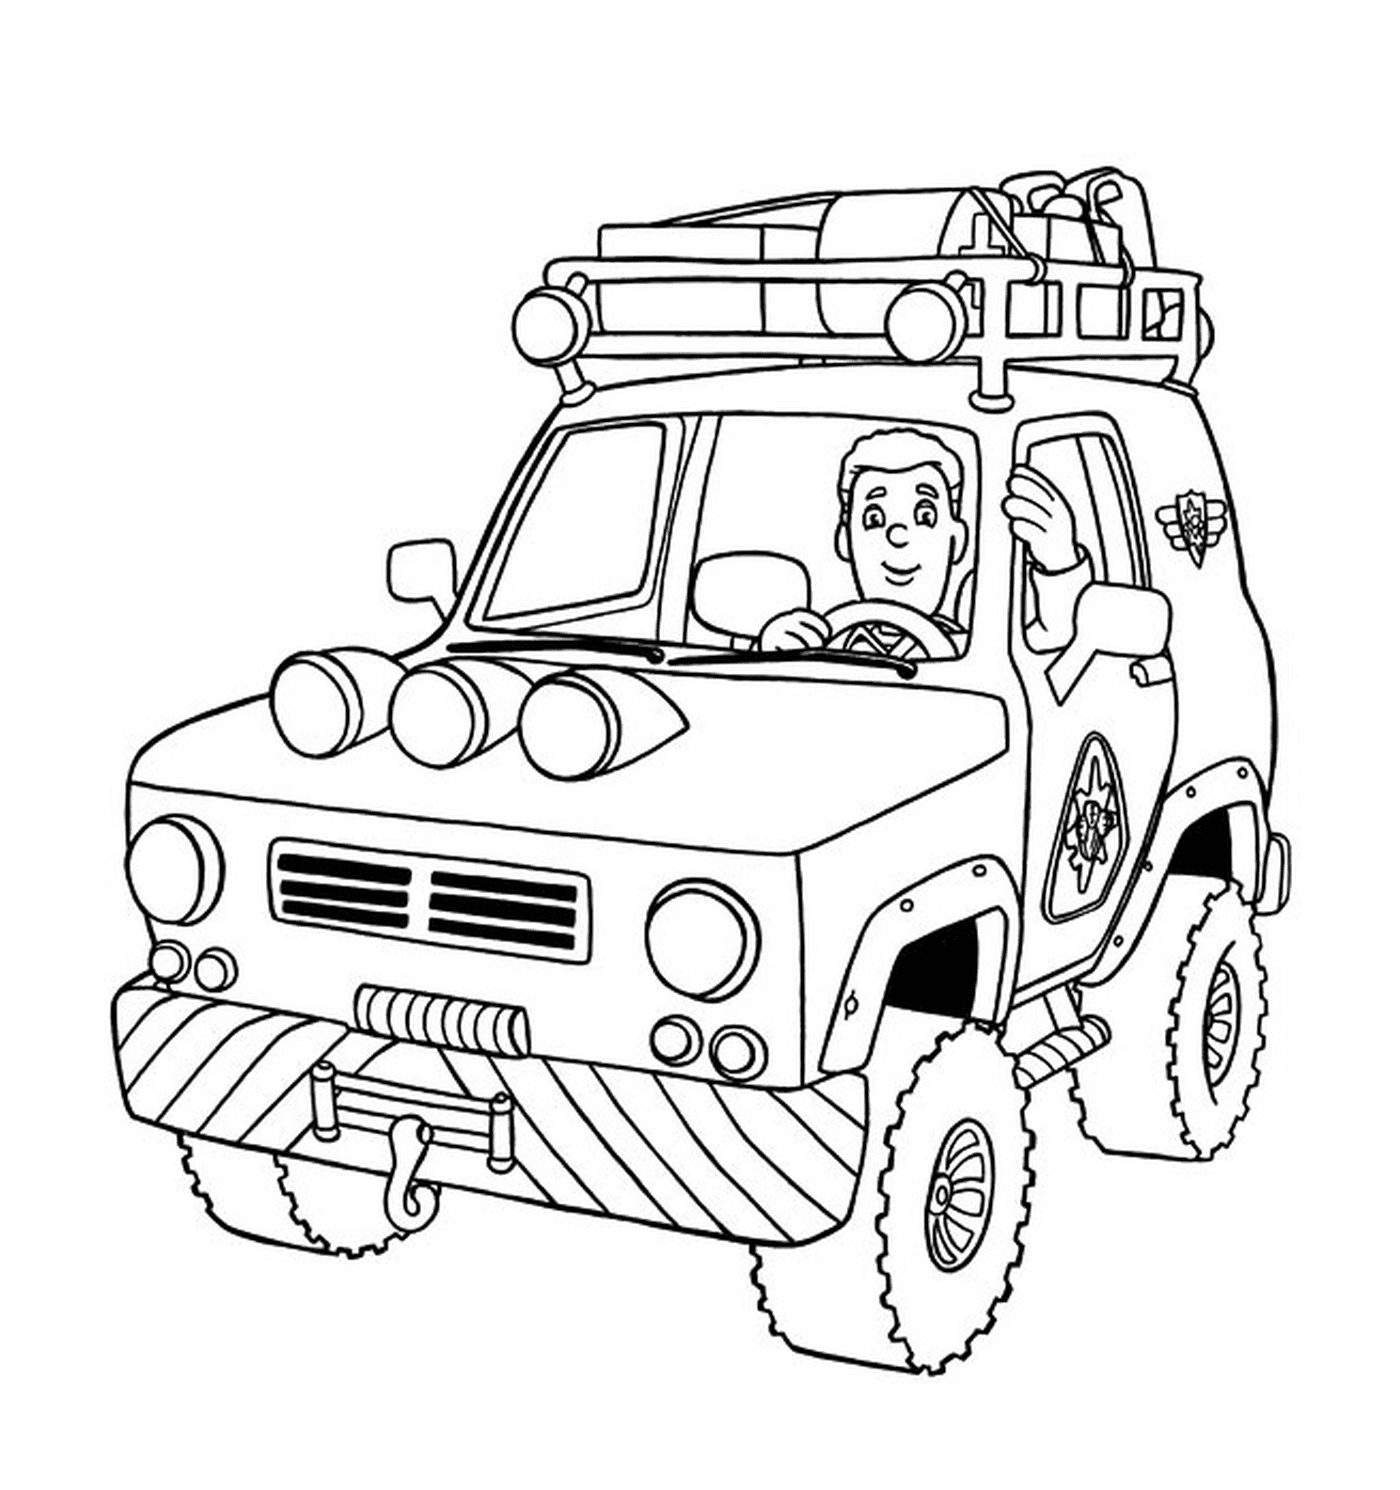  All-terrain fire truck 